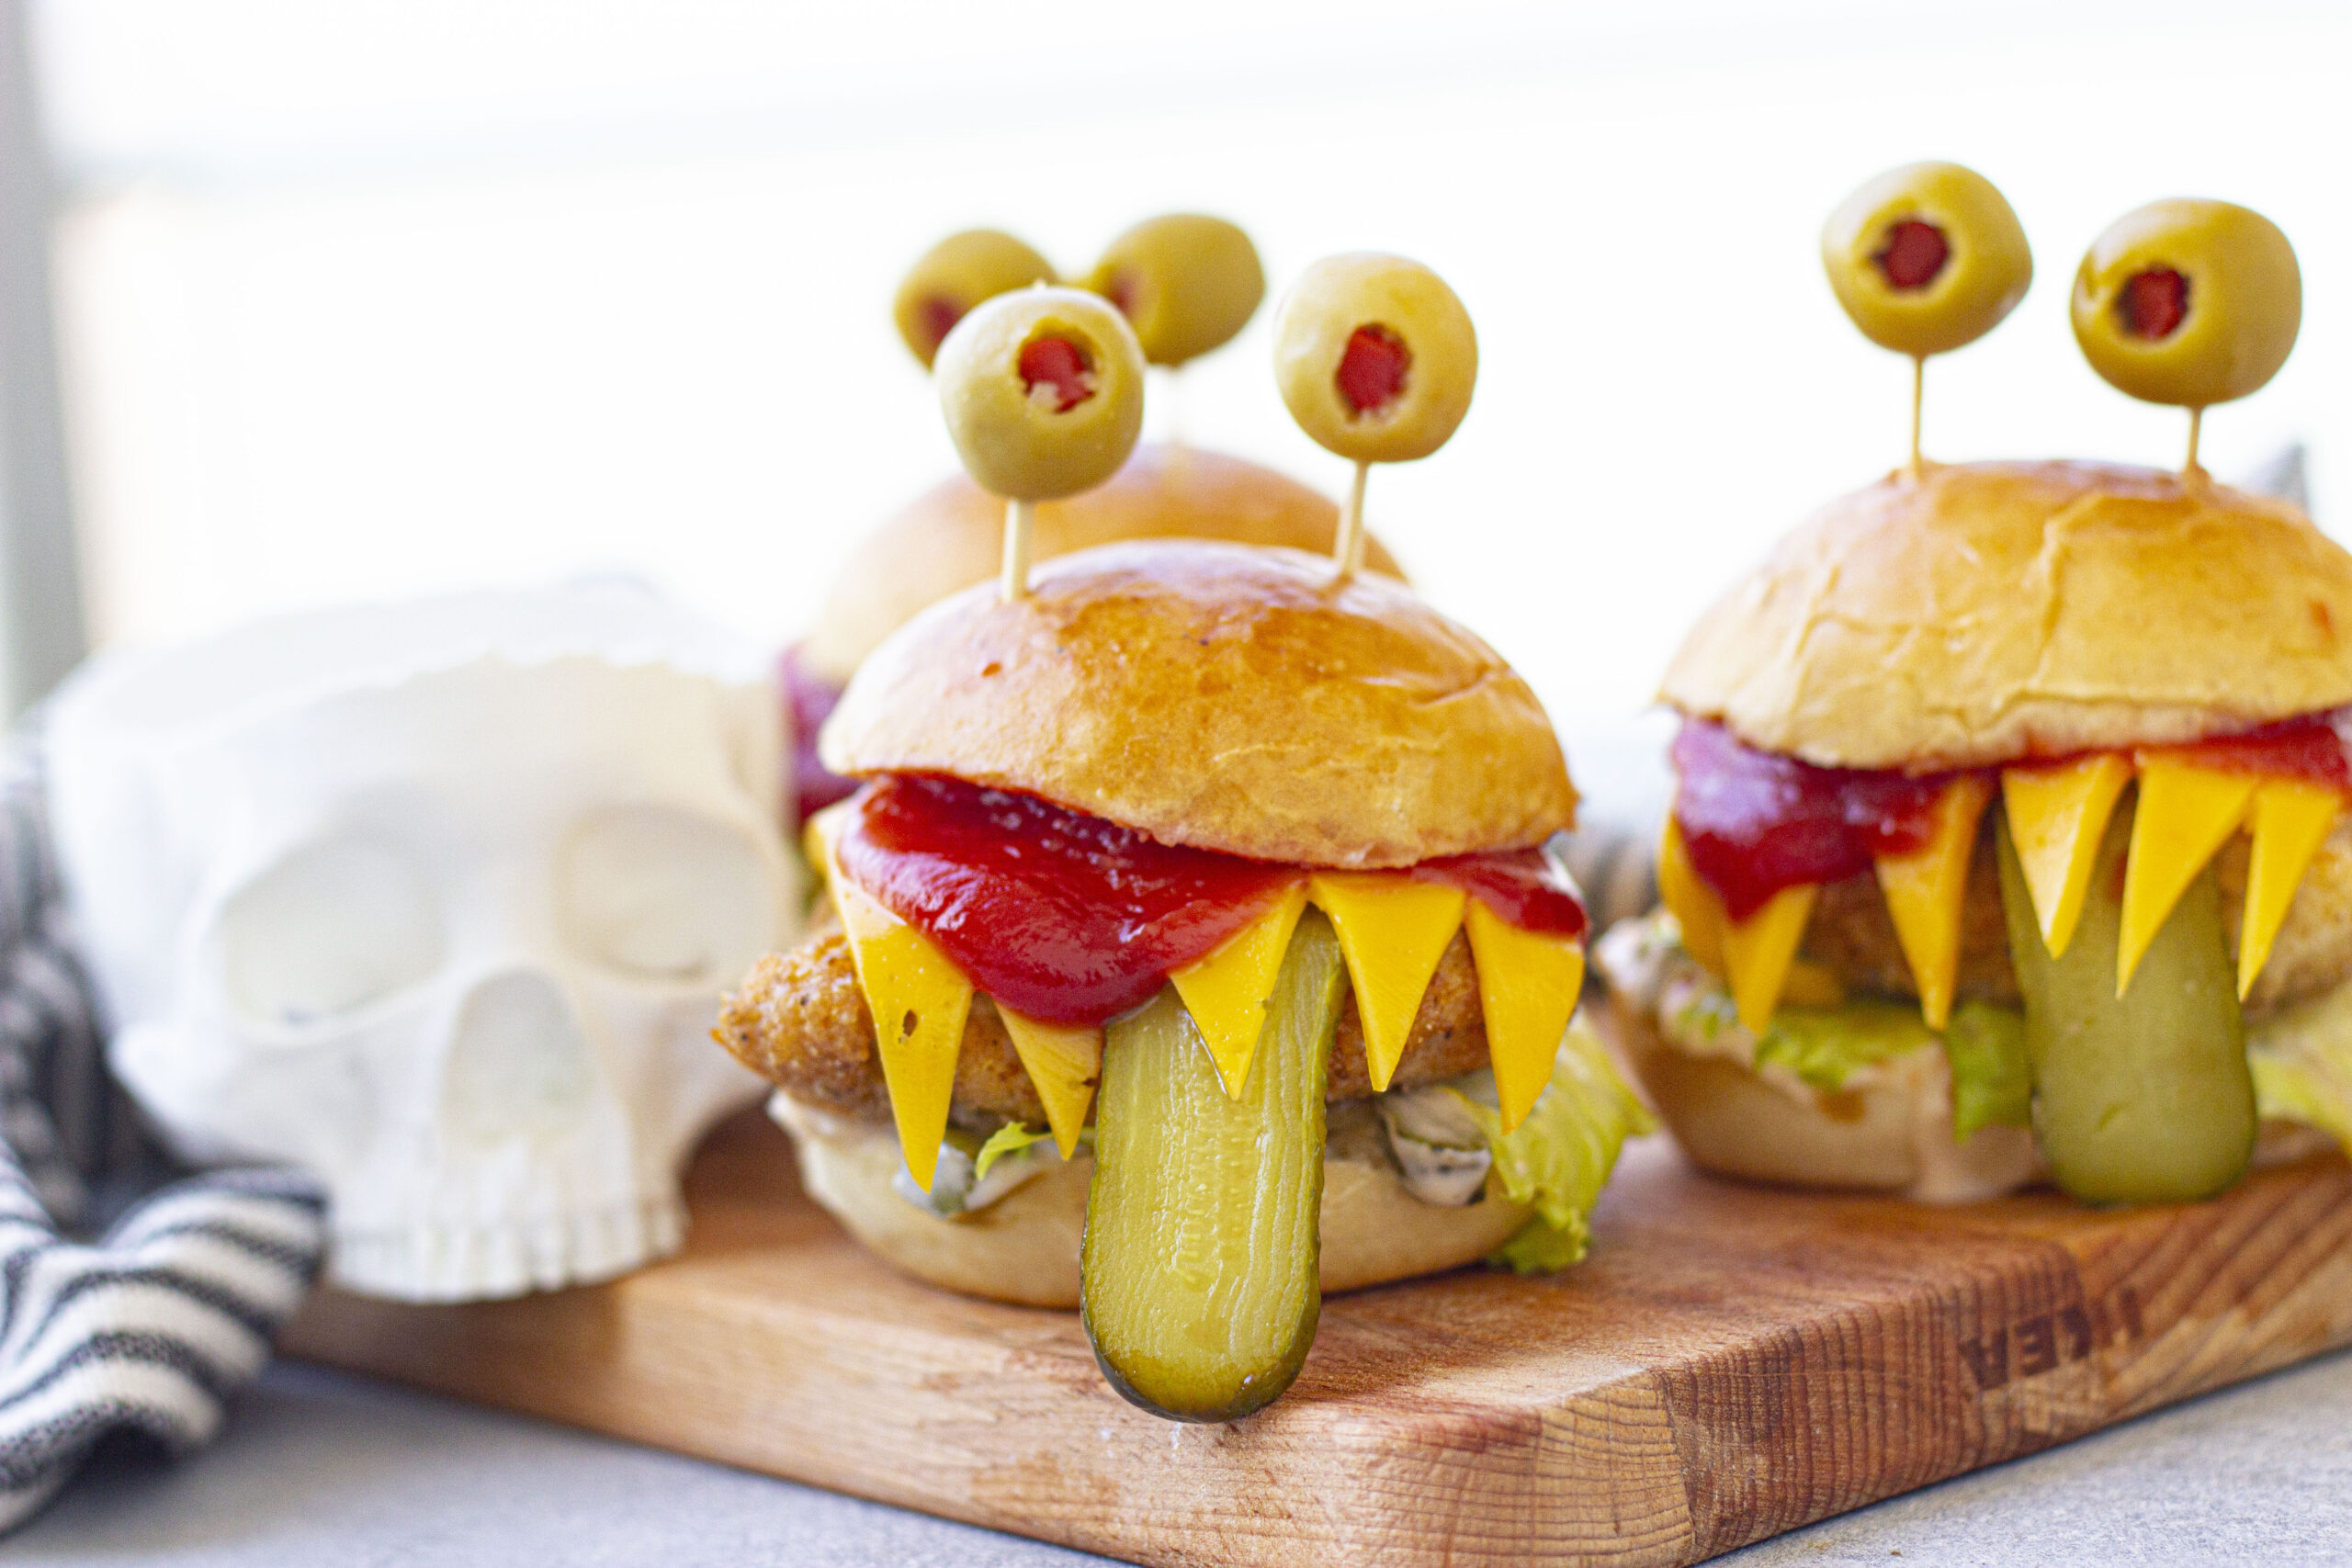 Monster Burger (or Sandwich) for Halloween Dinner